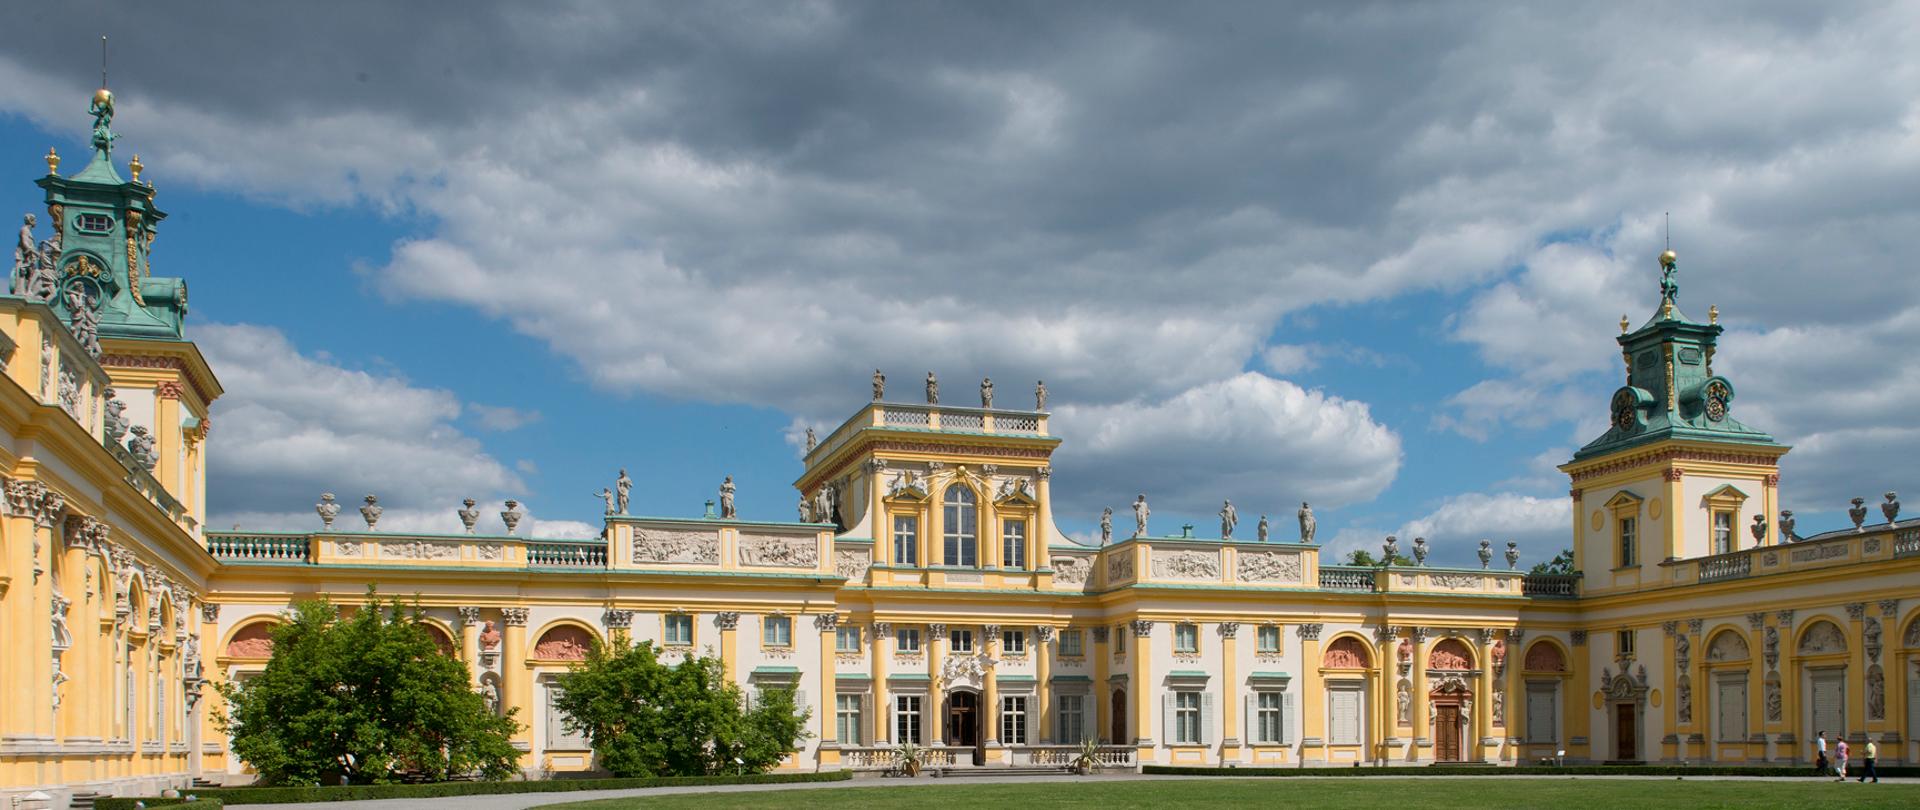 Muzeum Pałacu Króla Jana III w Wilanowie fot W Holnicki - Pałac od strony Dziedzińca Głównego